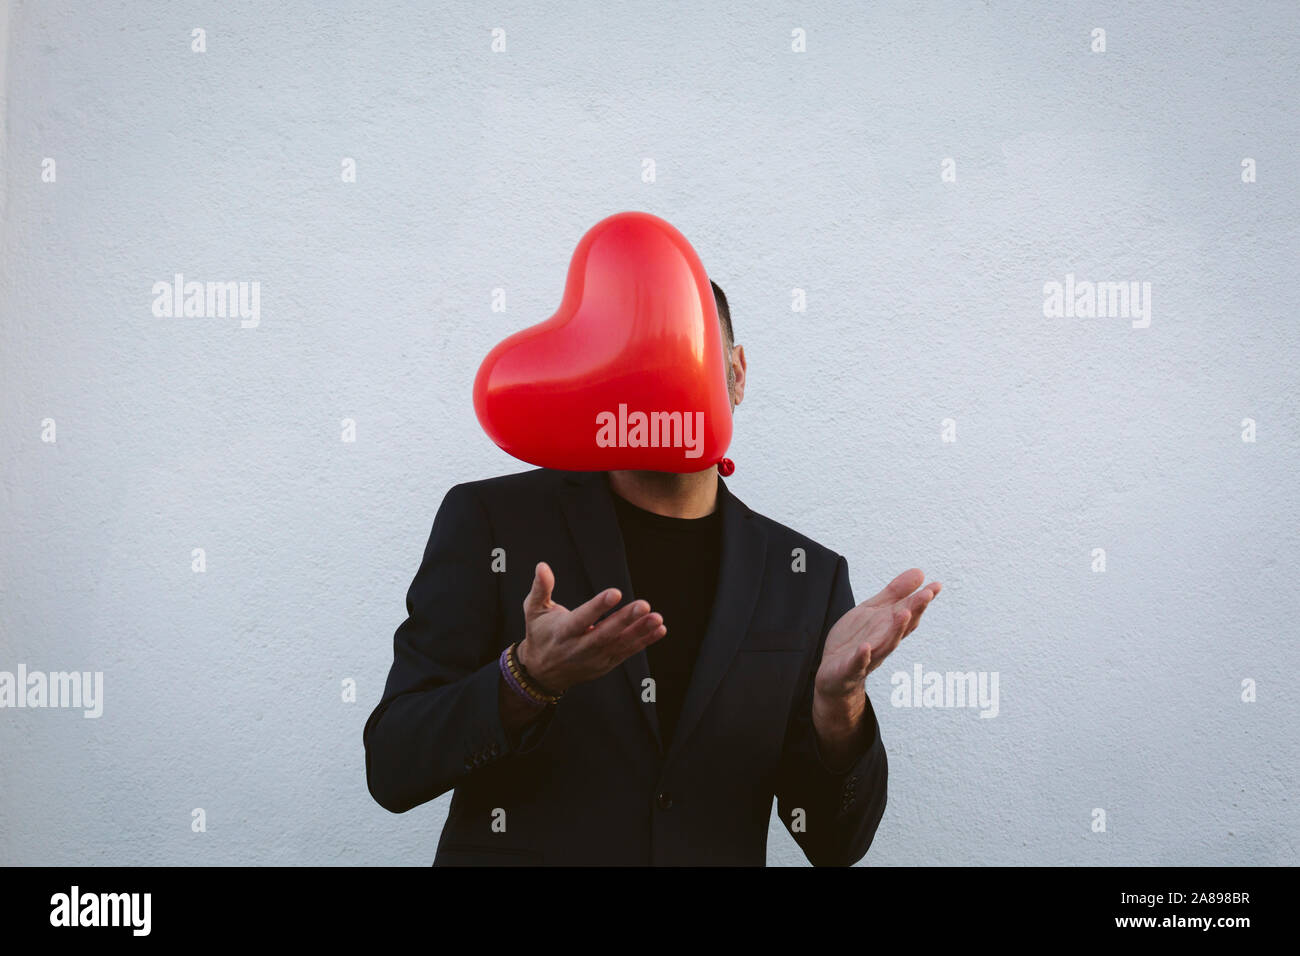 Homme lançant un ballon rouge en forme de coeur Banque D'Images